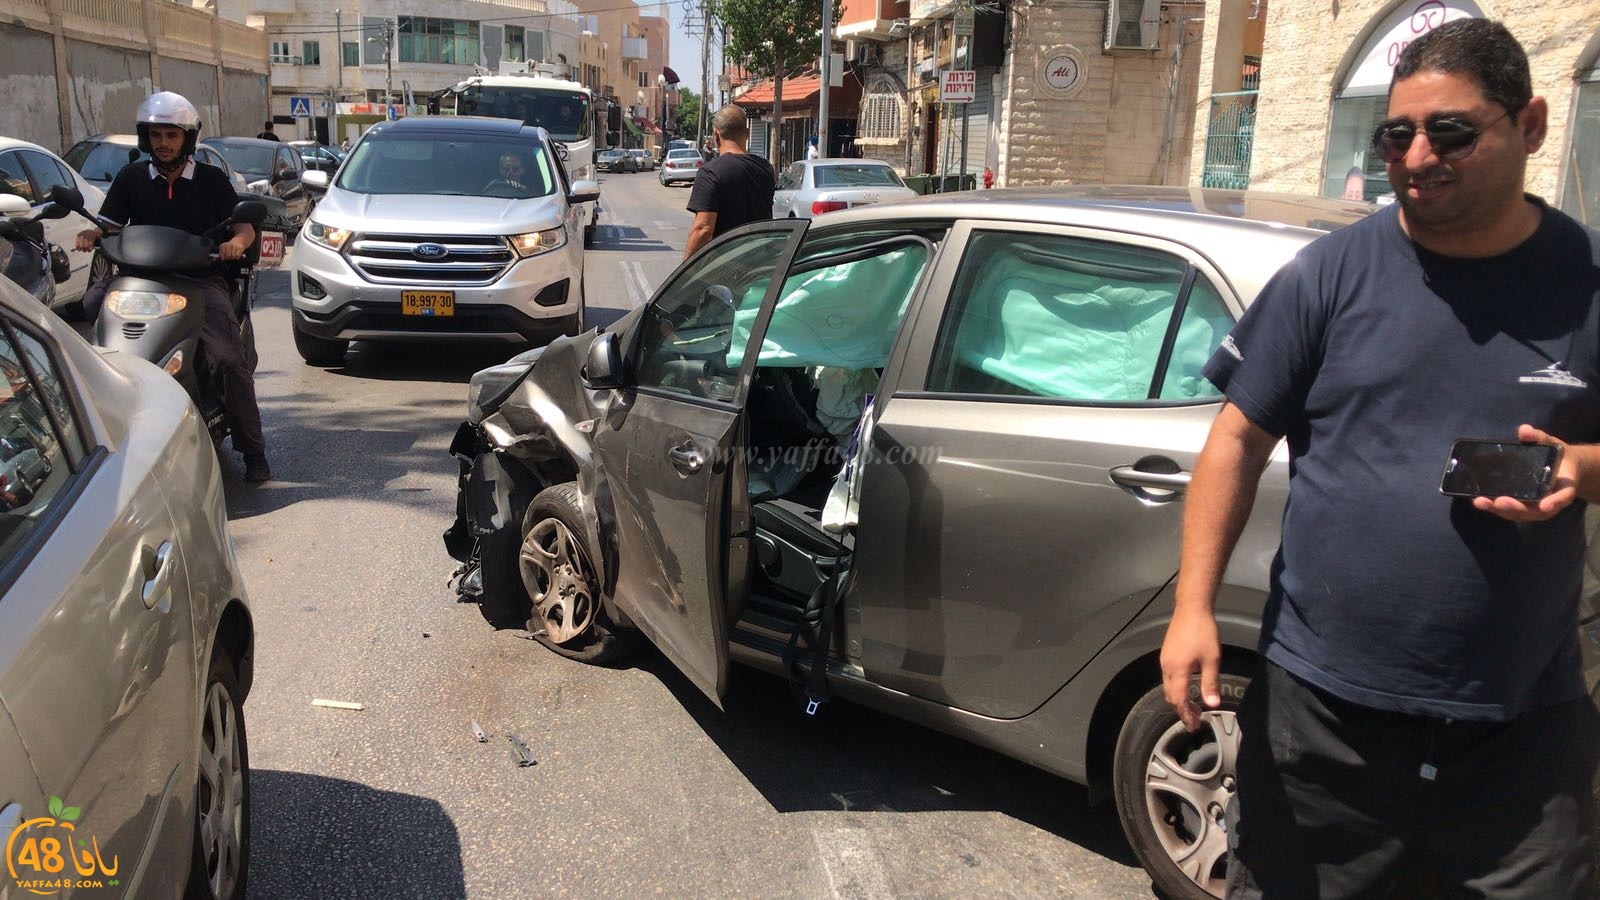  بالصور: حادث طرق بين مركبتين في يافا دون وقوع اصابات 